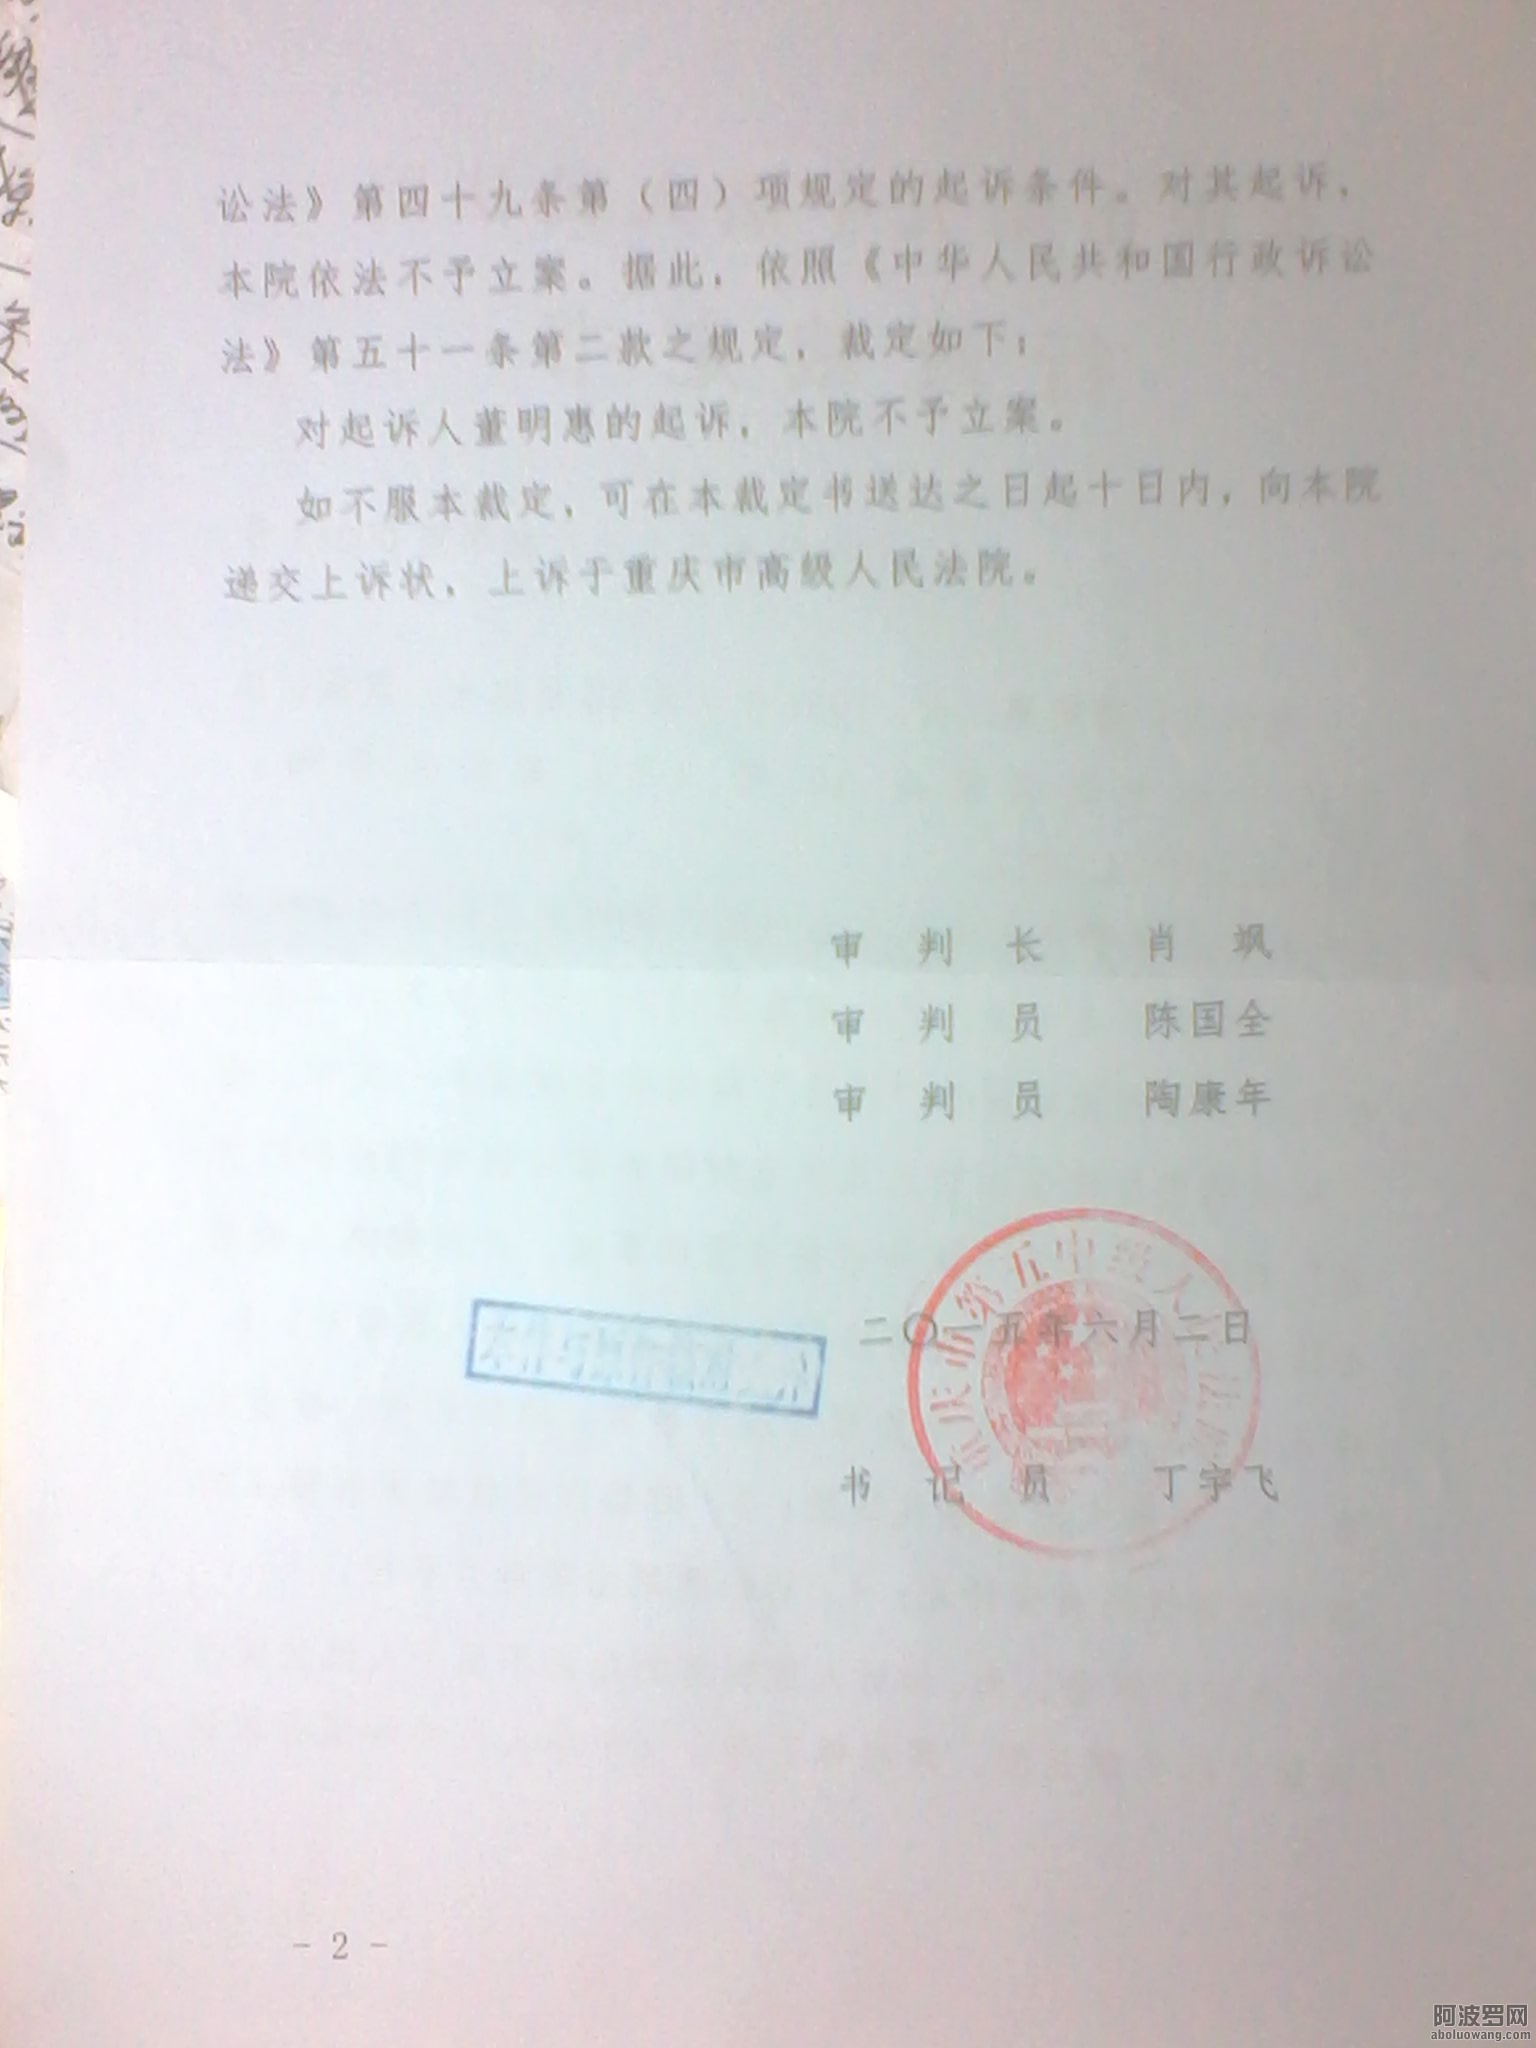 3、（后）2015年6月5日收到重庆市第五中级人民法院《行政裁定书》是重庆渝中大坪街道.jpg